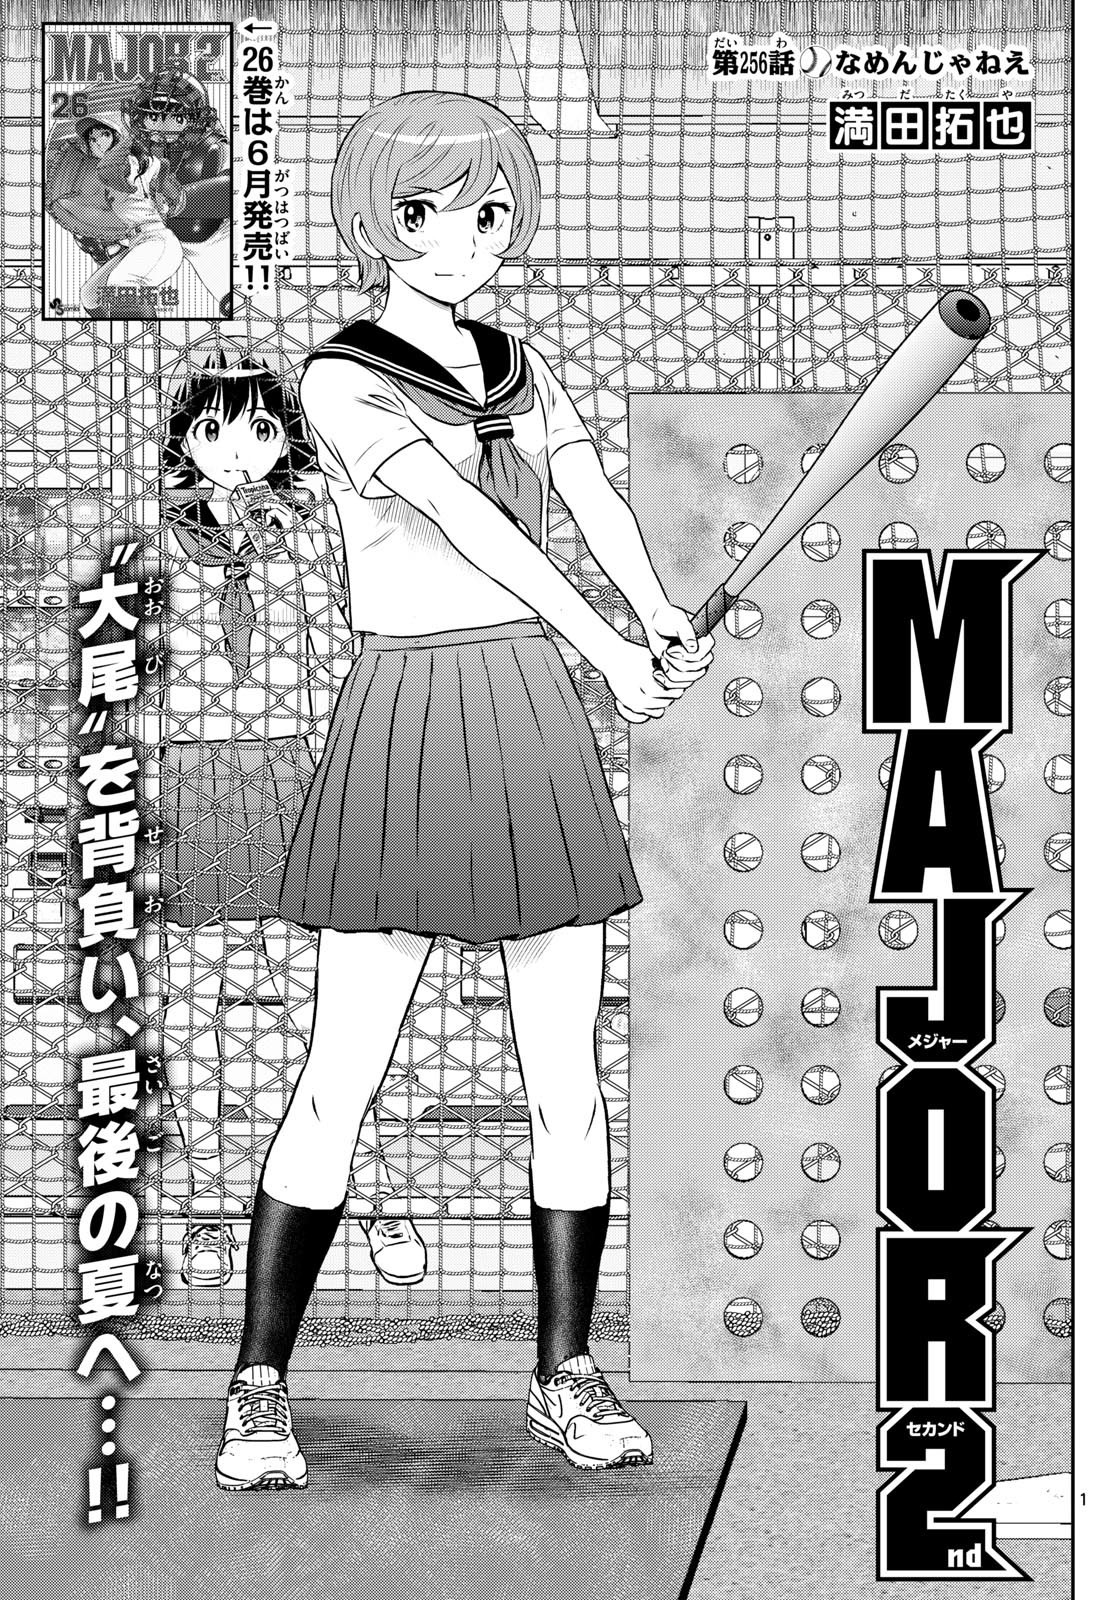 Major 2nd Chapter 223 Spoiler>> - Major Anime メジャー